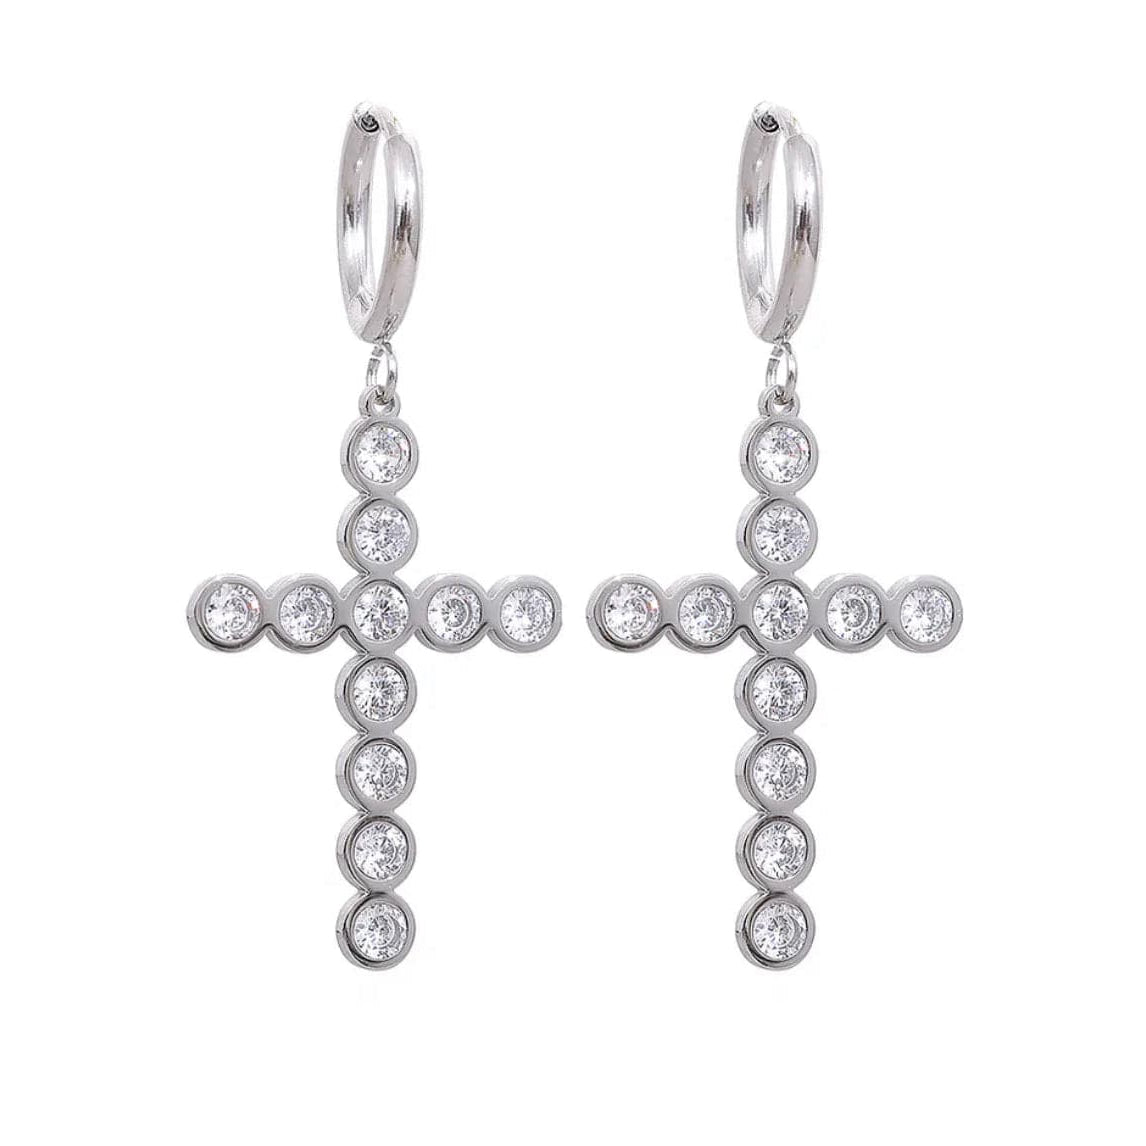 stainless steel Silver Maxi Cross Earrings